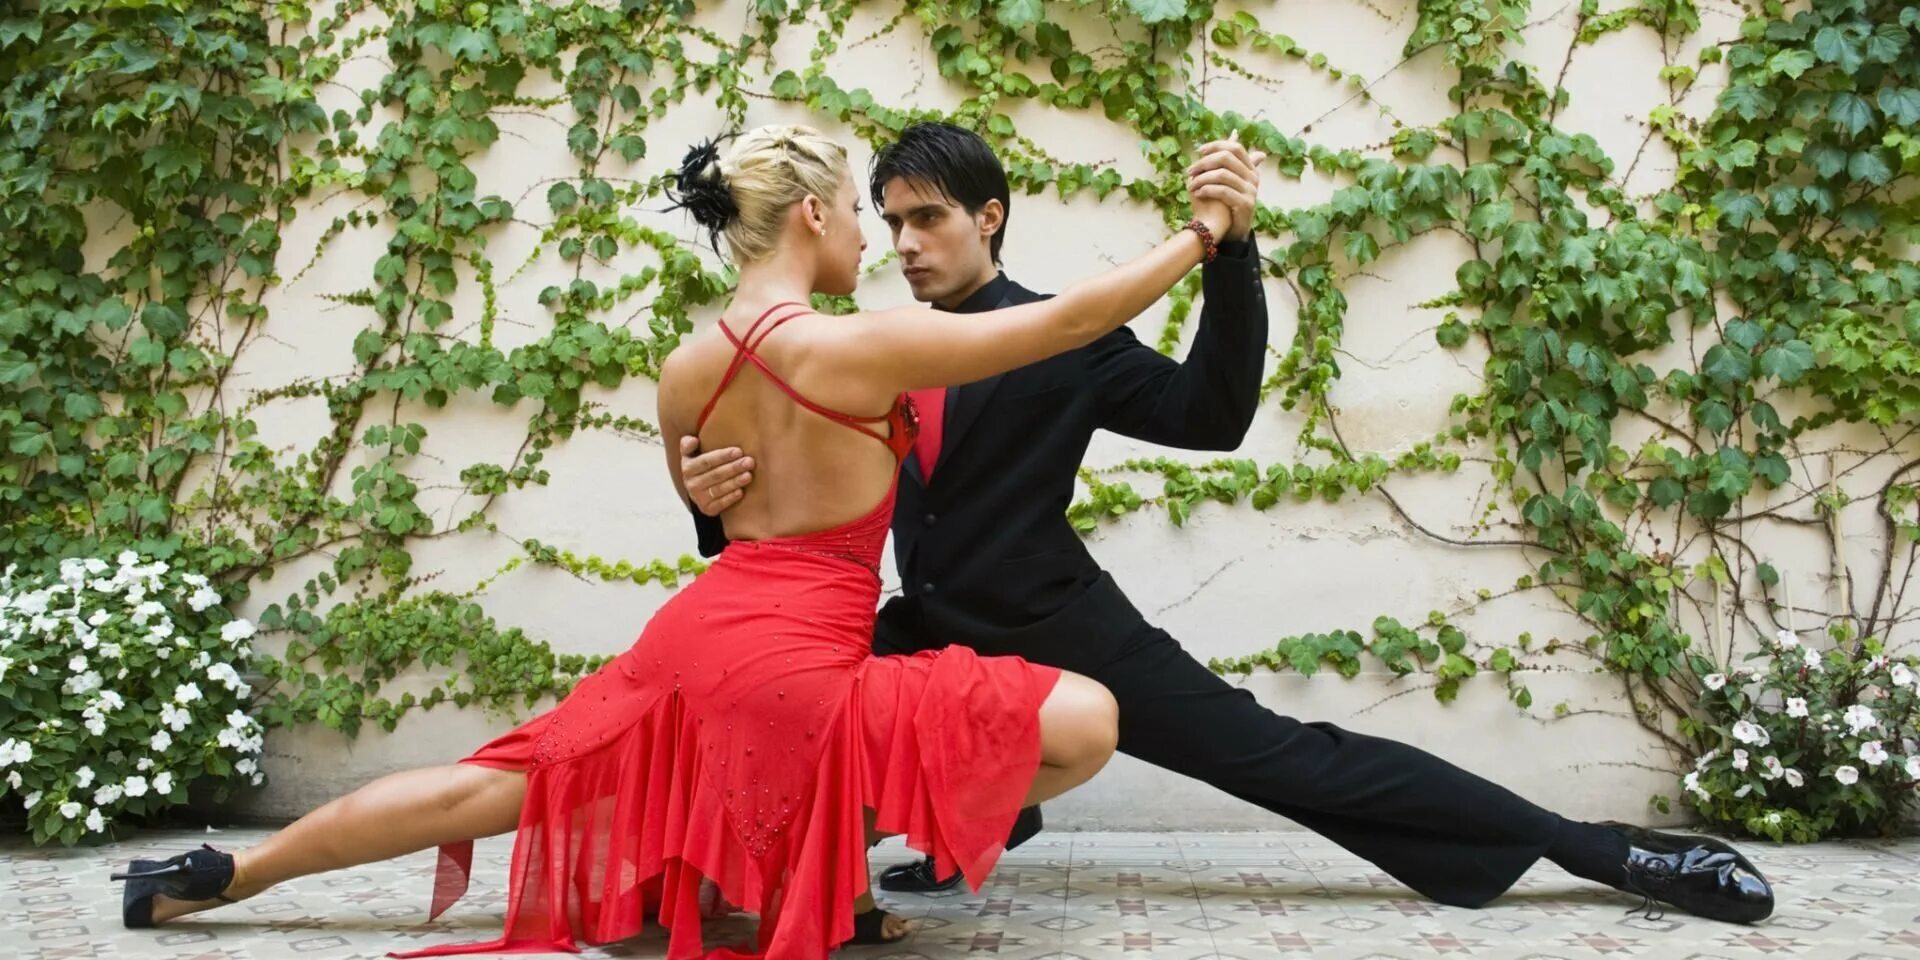 Показать красивые танцы. Аргентинское танго. Танец пары. Романтический танец. Танго танец.